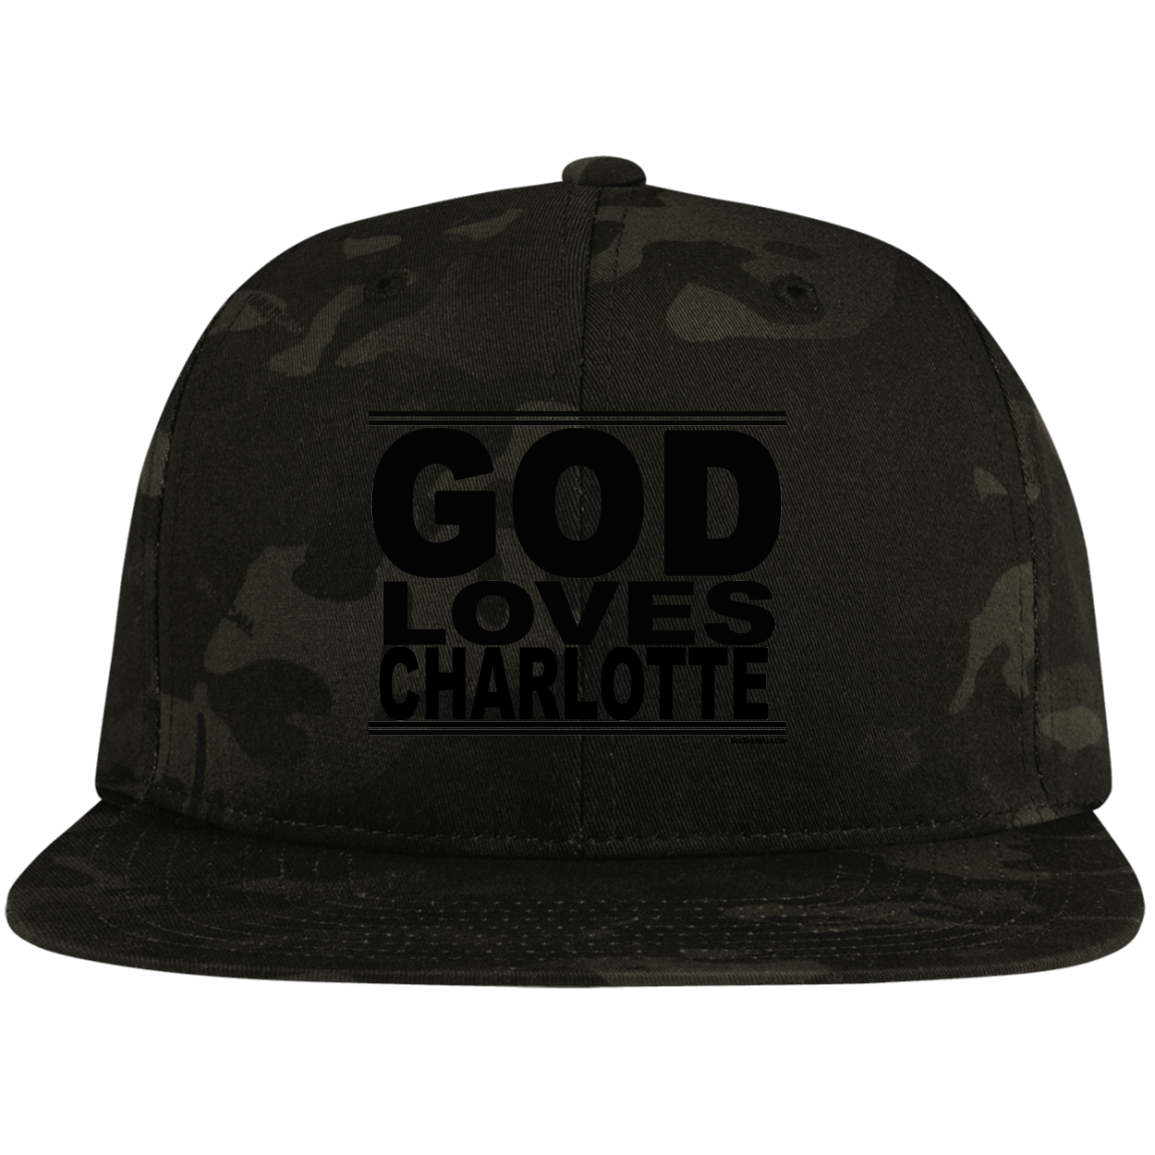 #GodLovesCharlotte - Snapback Hat